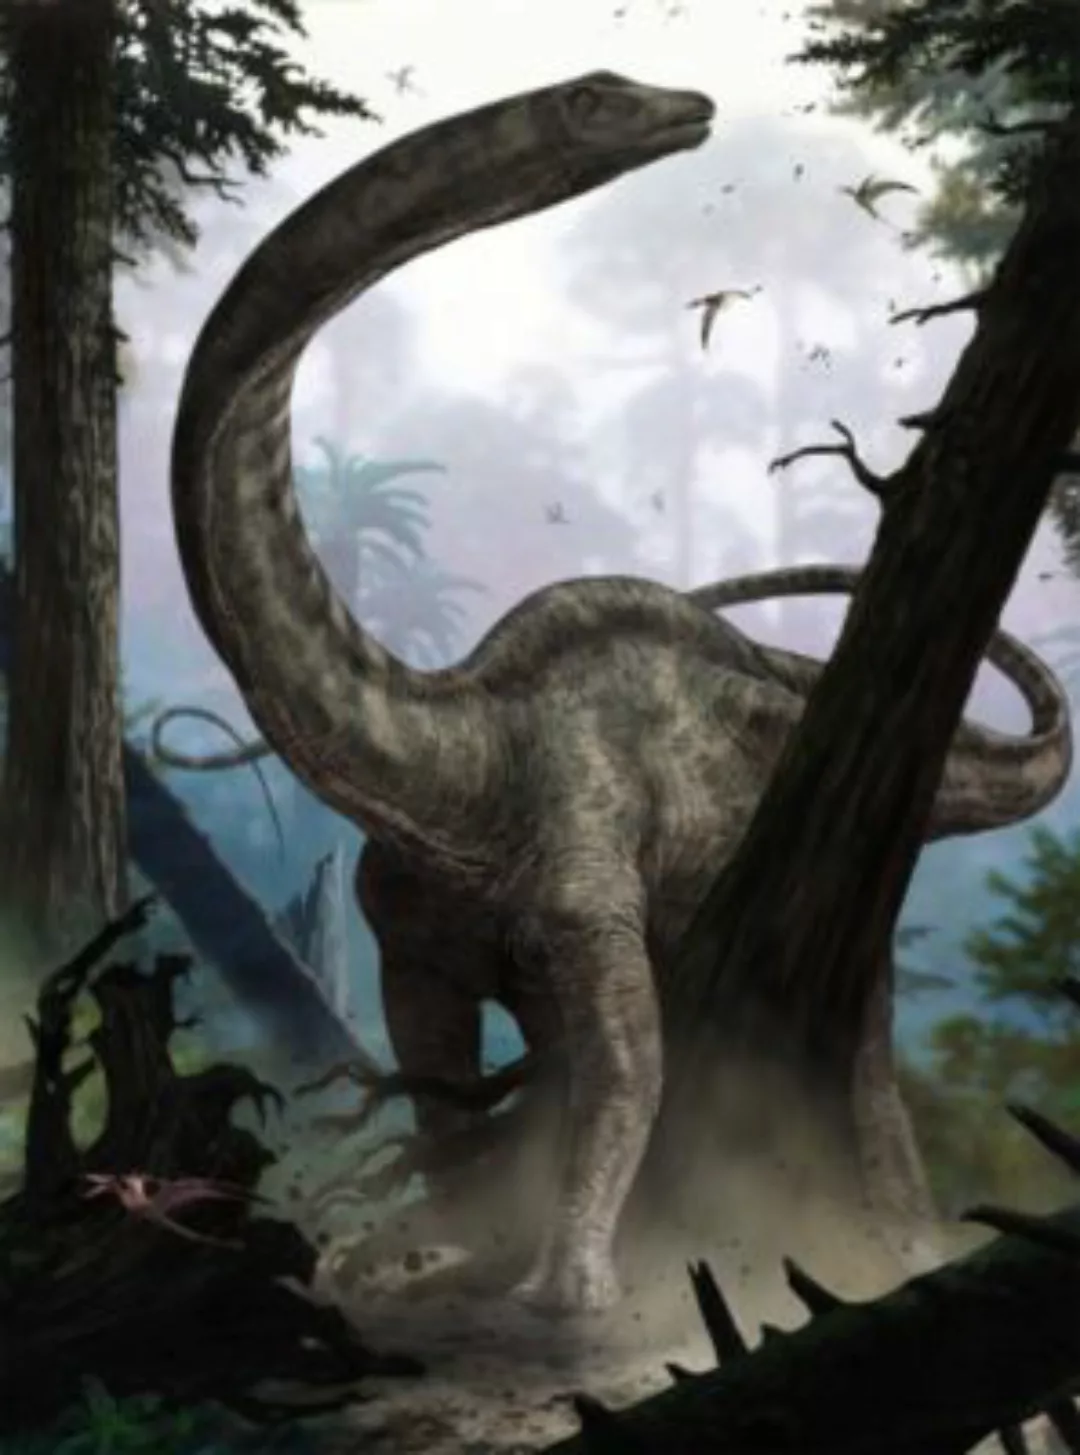 KOMAR Vlies Fototapete - Rebbachisaurus - Größe 184 x 248 cm mehrfarbig günstig online kaufen